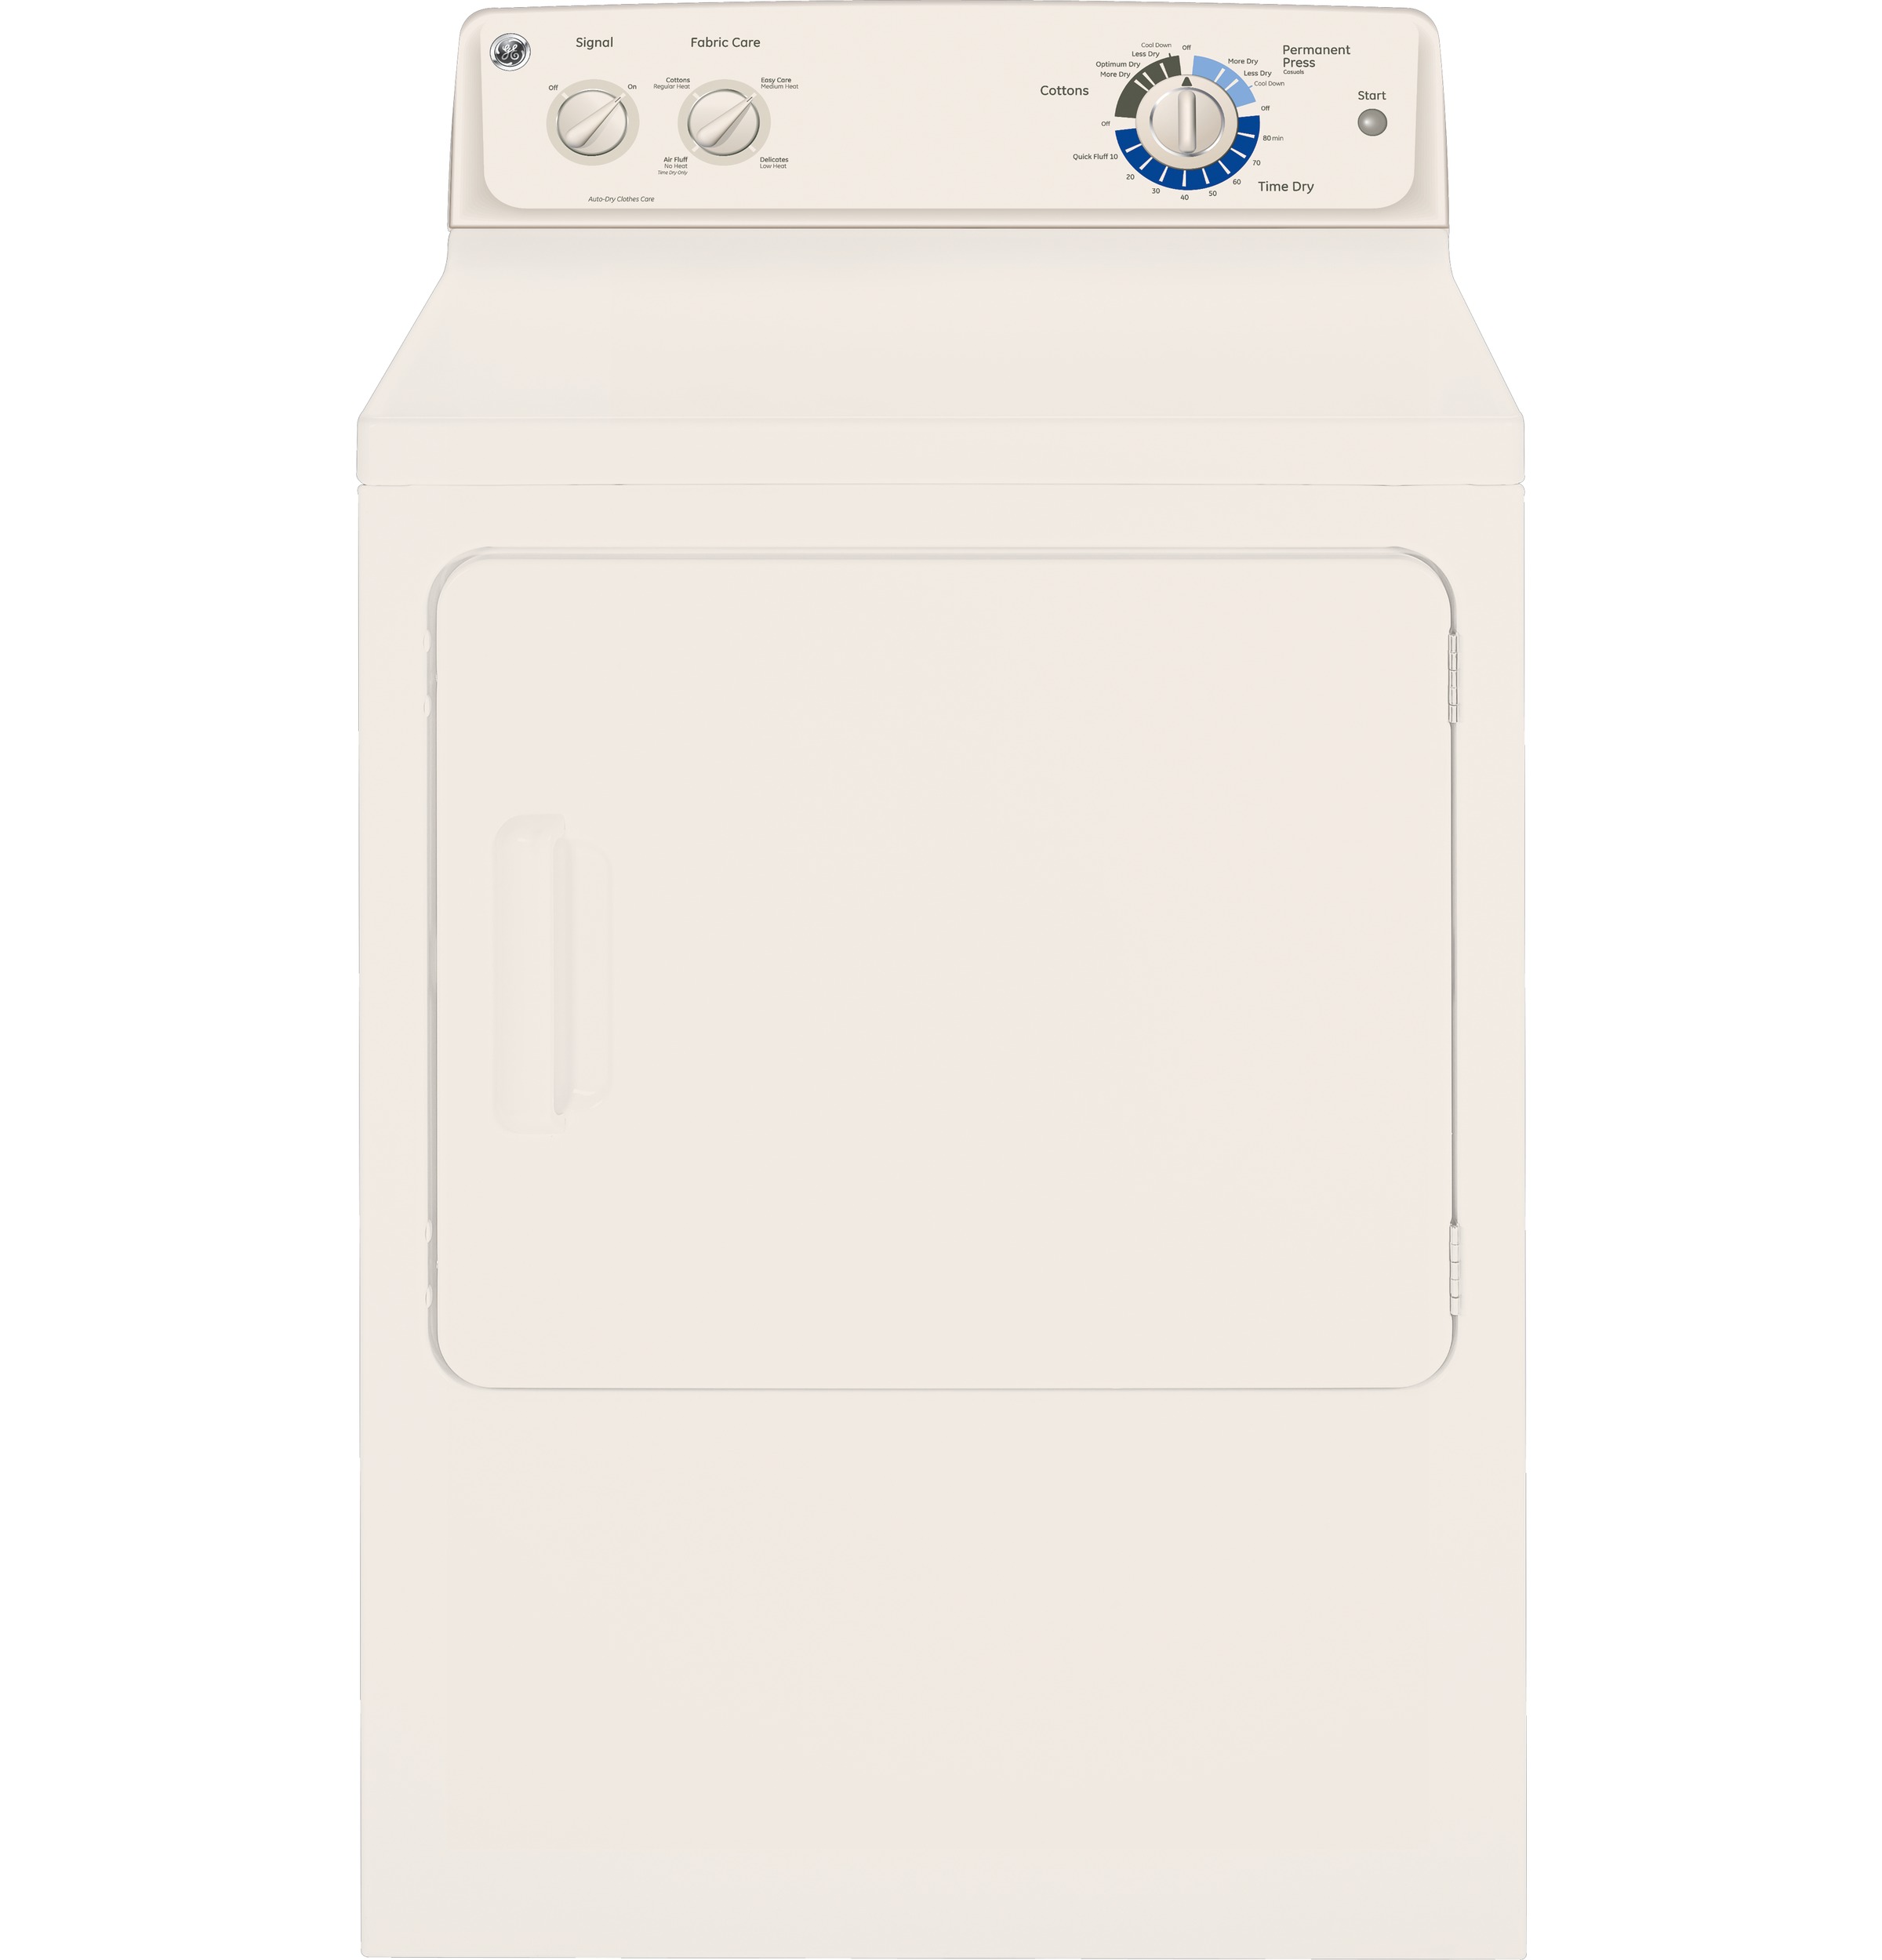 GE® 6.0 cu. ft. capacity Dura Drum gas dryer